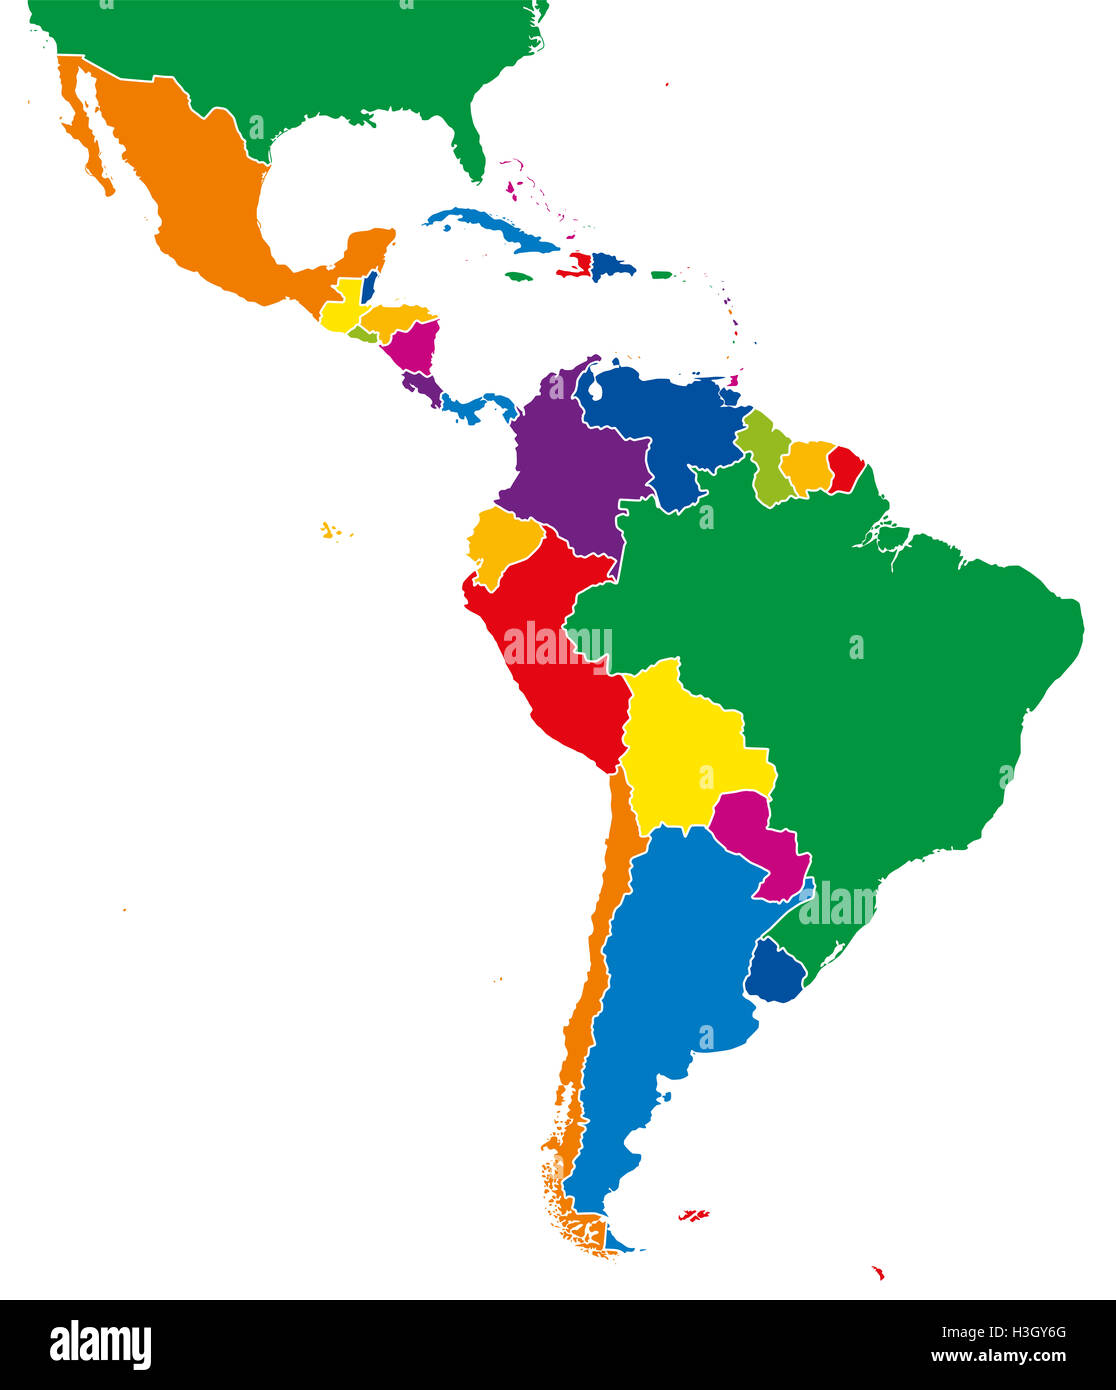 América Latina solo mapa de estados. Todos los países en diferentes colores intensos y con las fronteras nacionales. Foto de stock